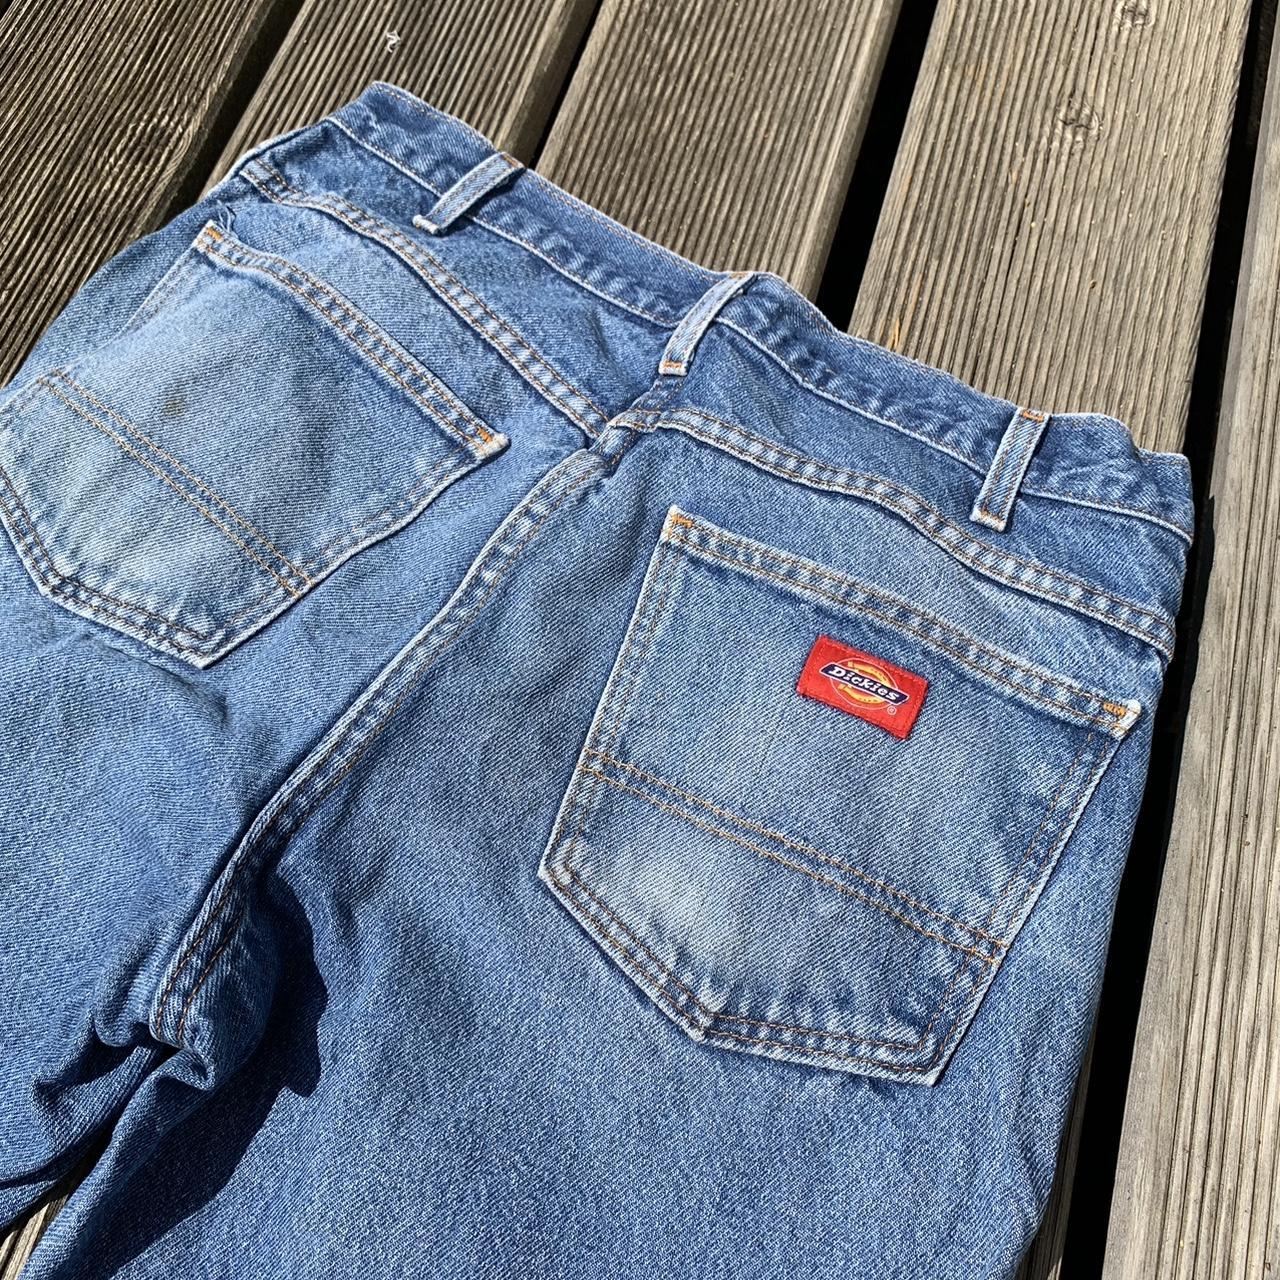 2000s baggy dickies jeans Fits 31”/32”... - Depop